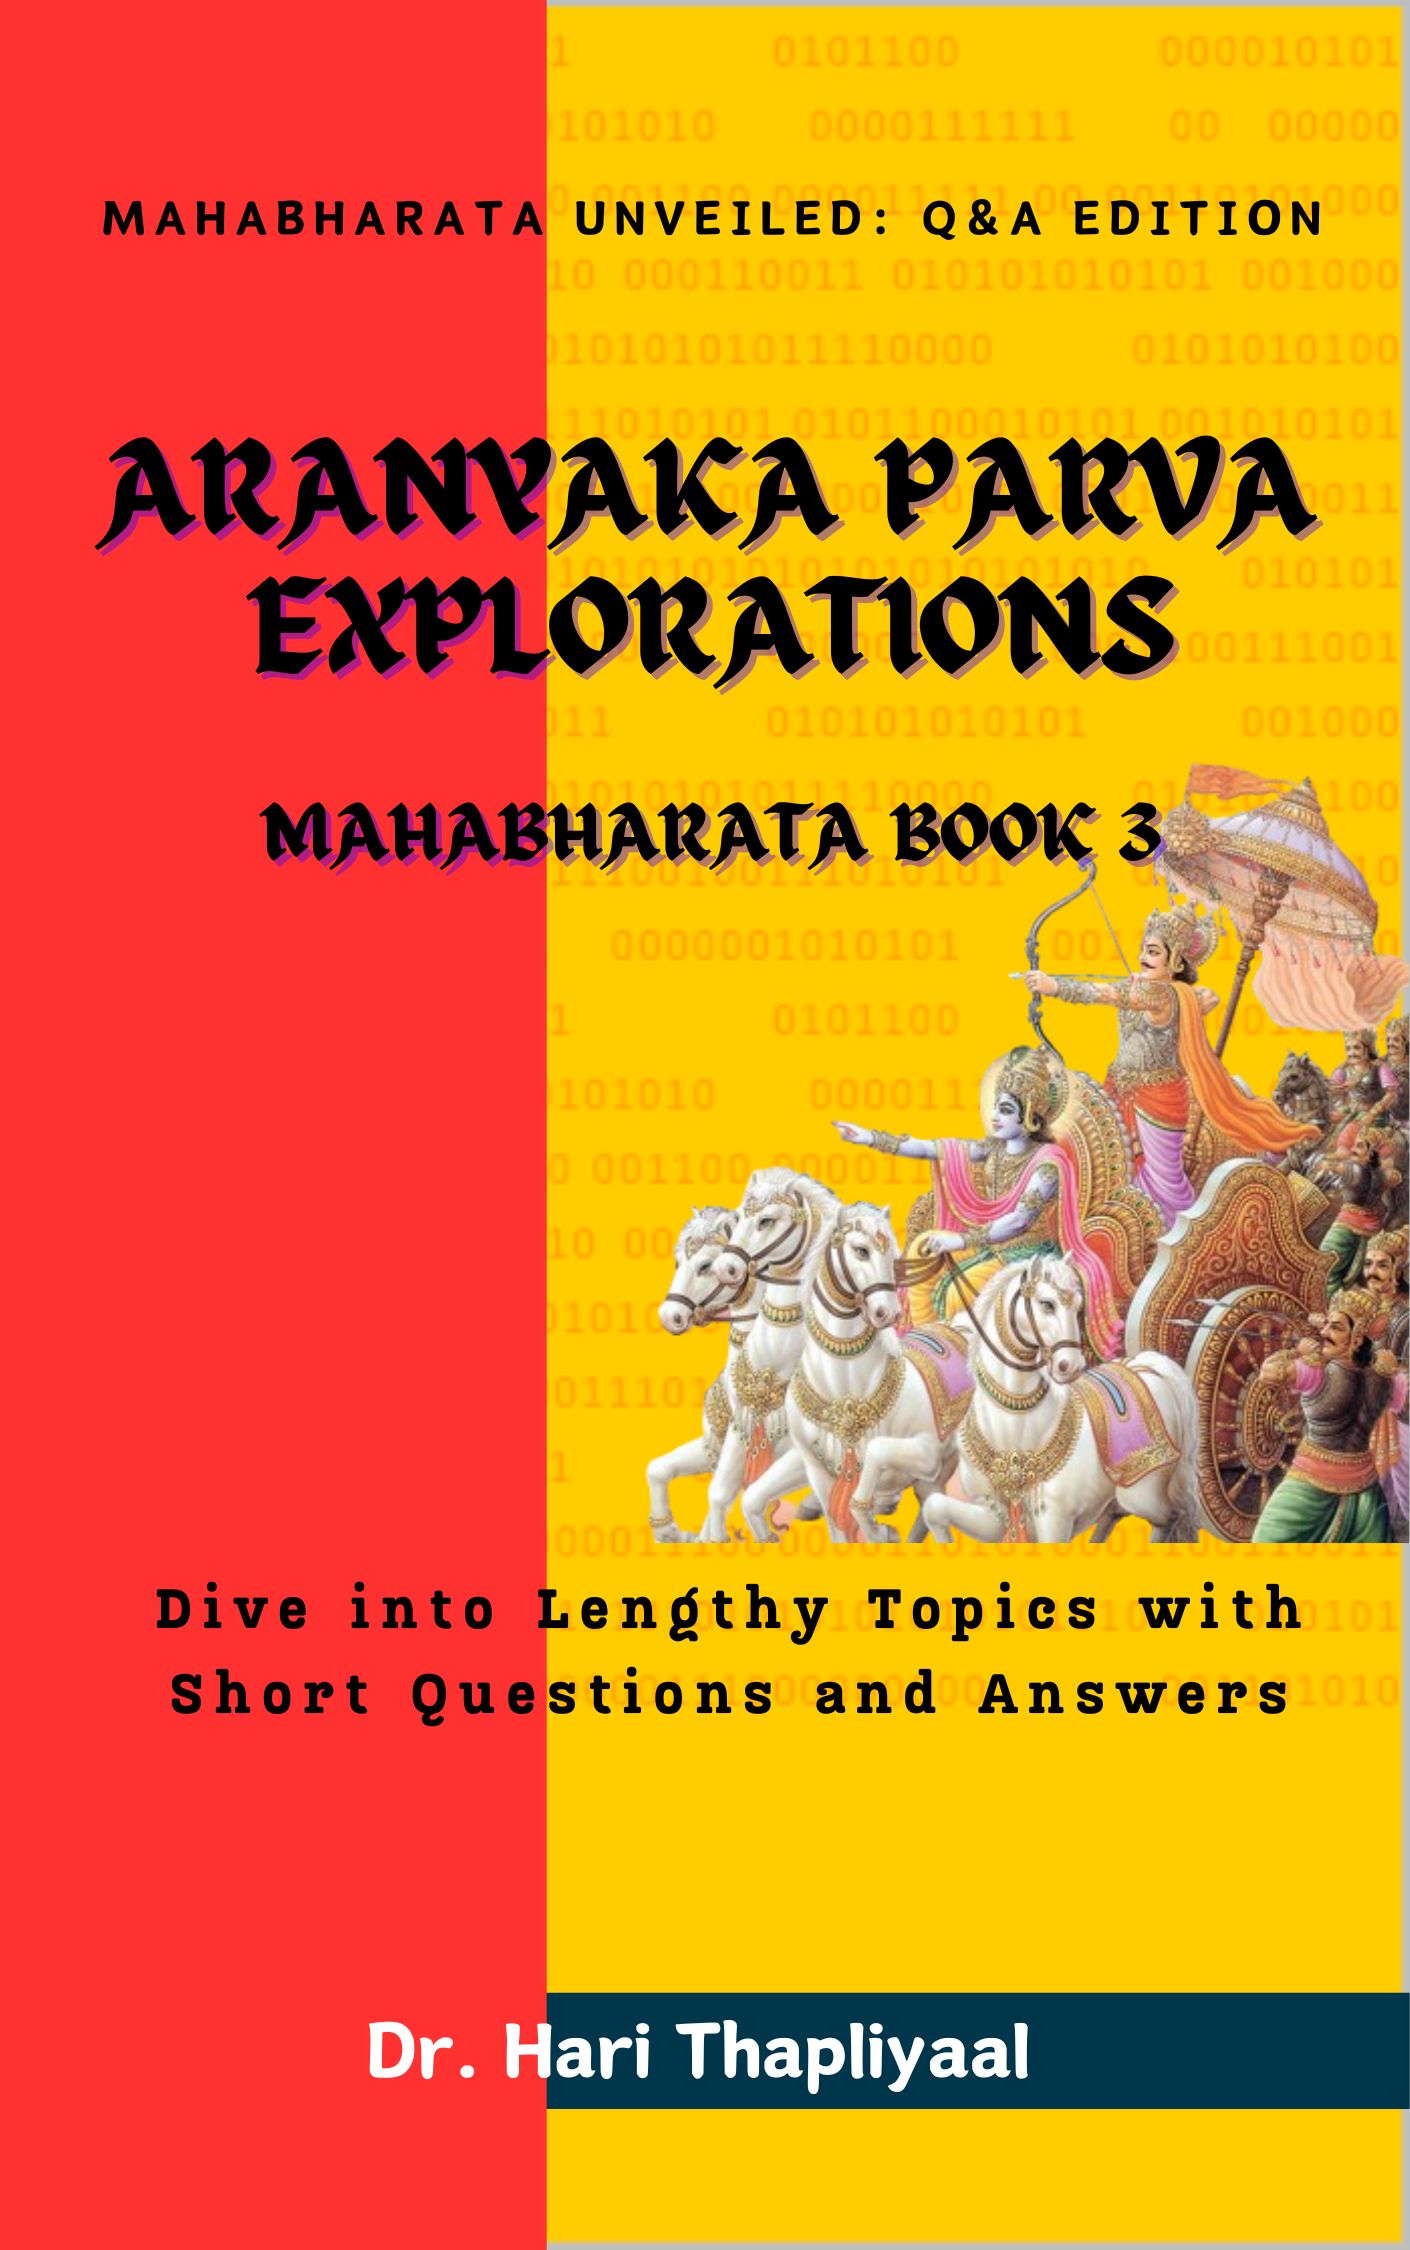 Book: Aranyak Parva Explorations : Mahabharata Book 1